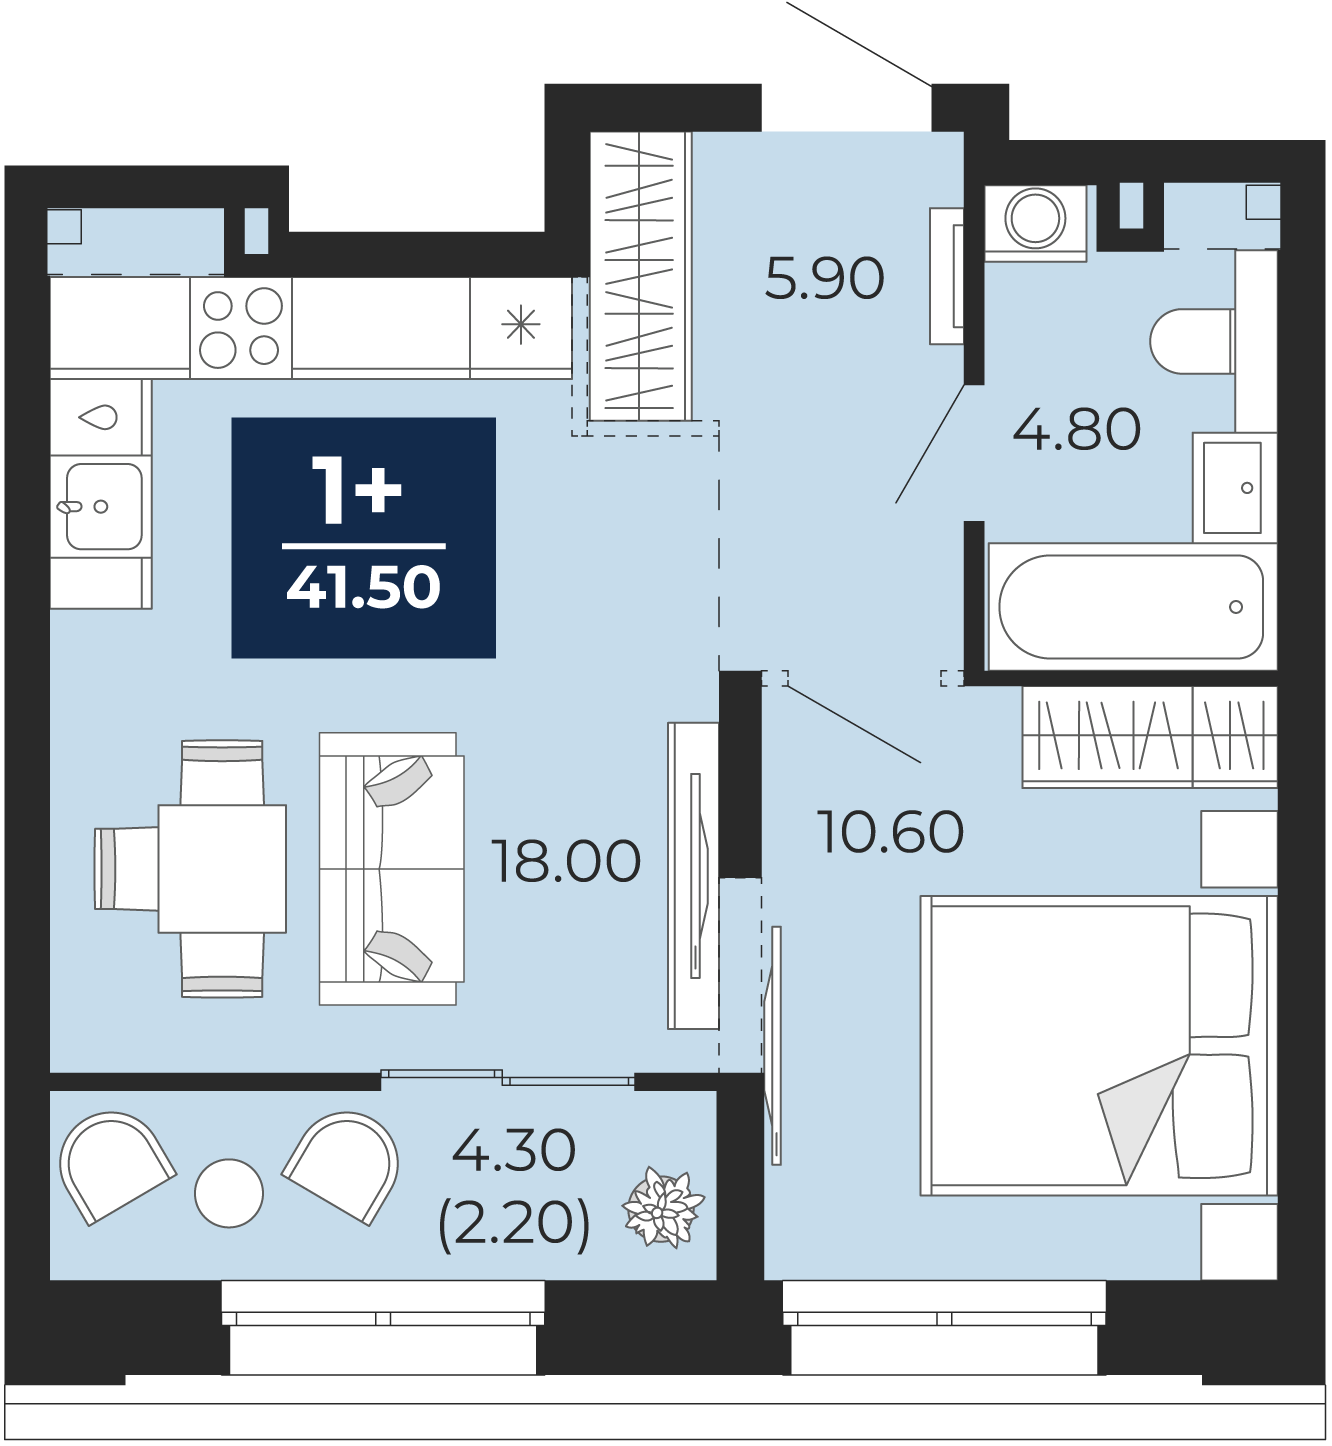 Квартира № 359, 1-комнатная, 41.5 кв. м, 2 этаж